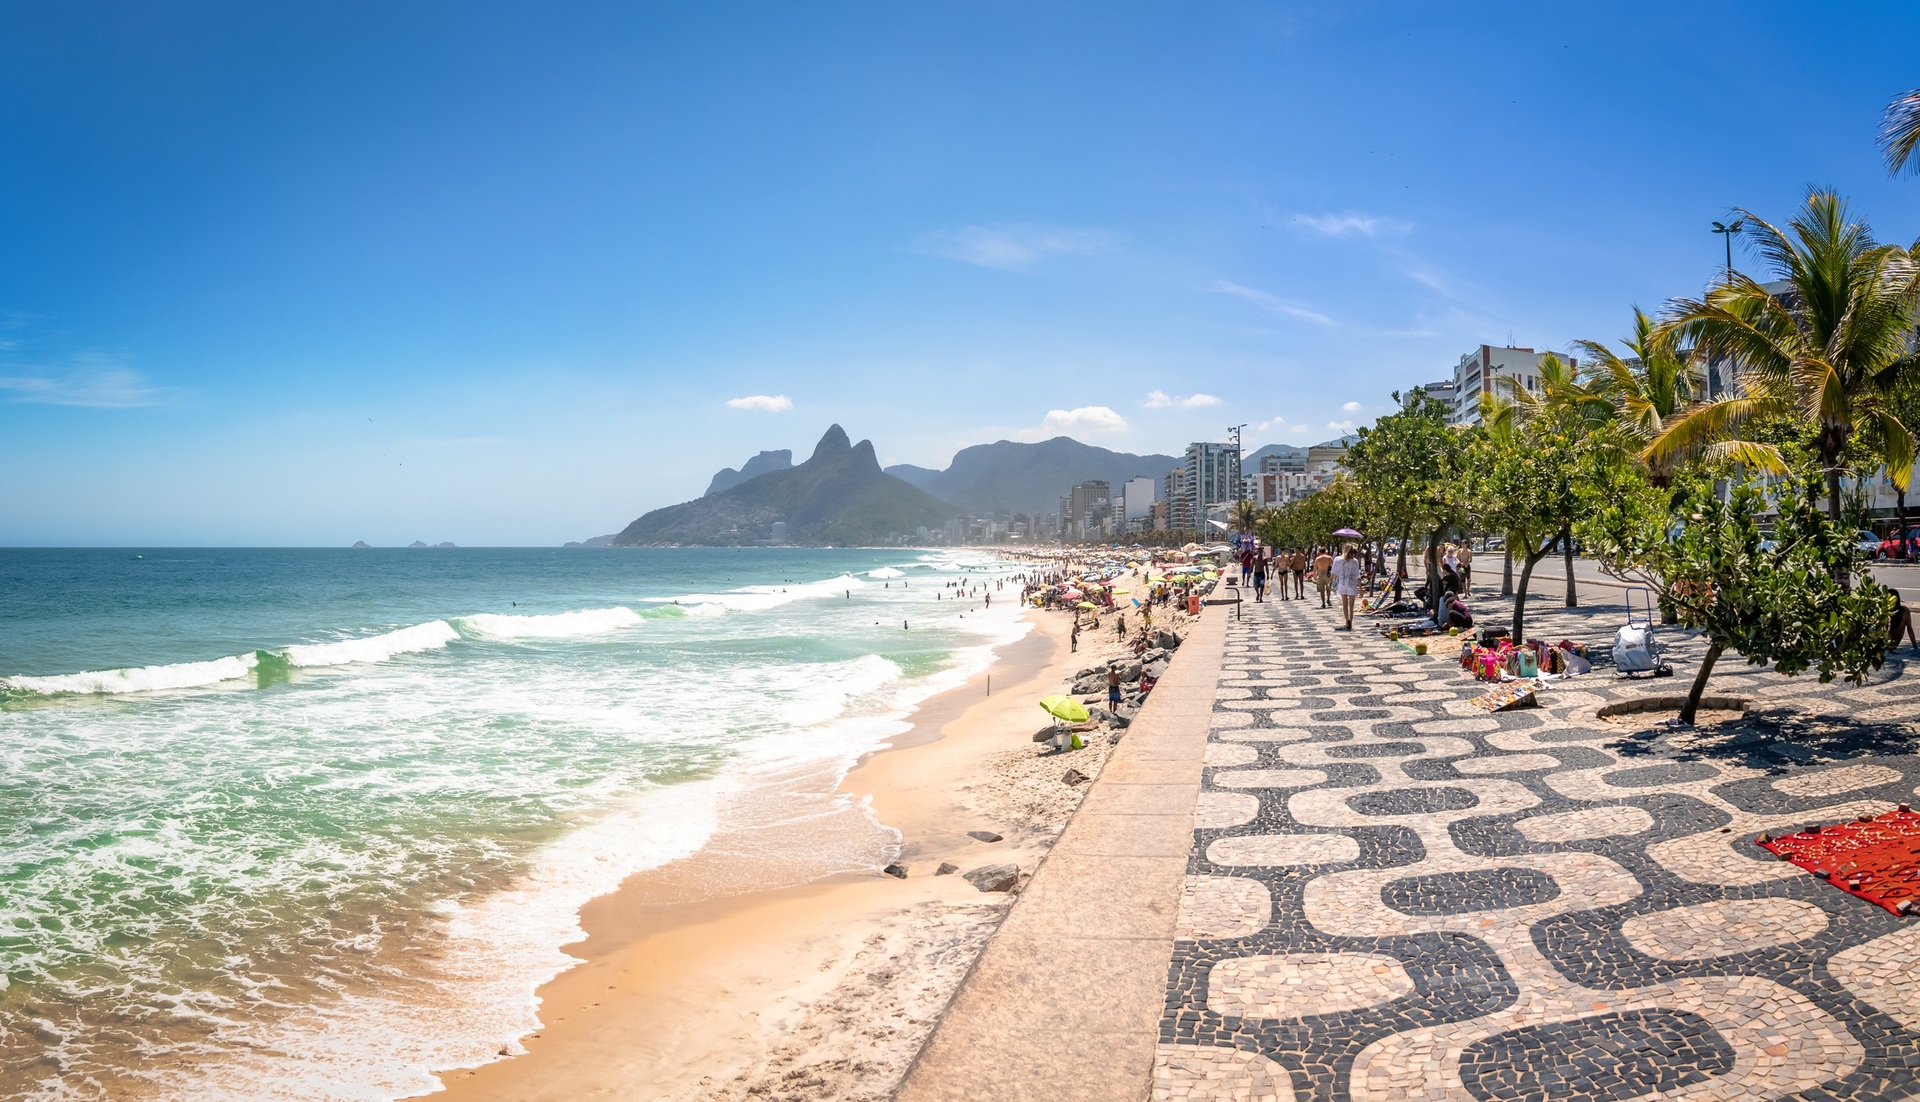 Uma dos cartões postais mais conhecidos do Rio de Janeiro: a praia de Ipanema e o morro Dois Irmãos ao fundo 